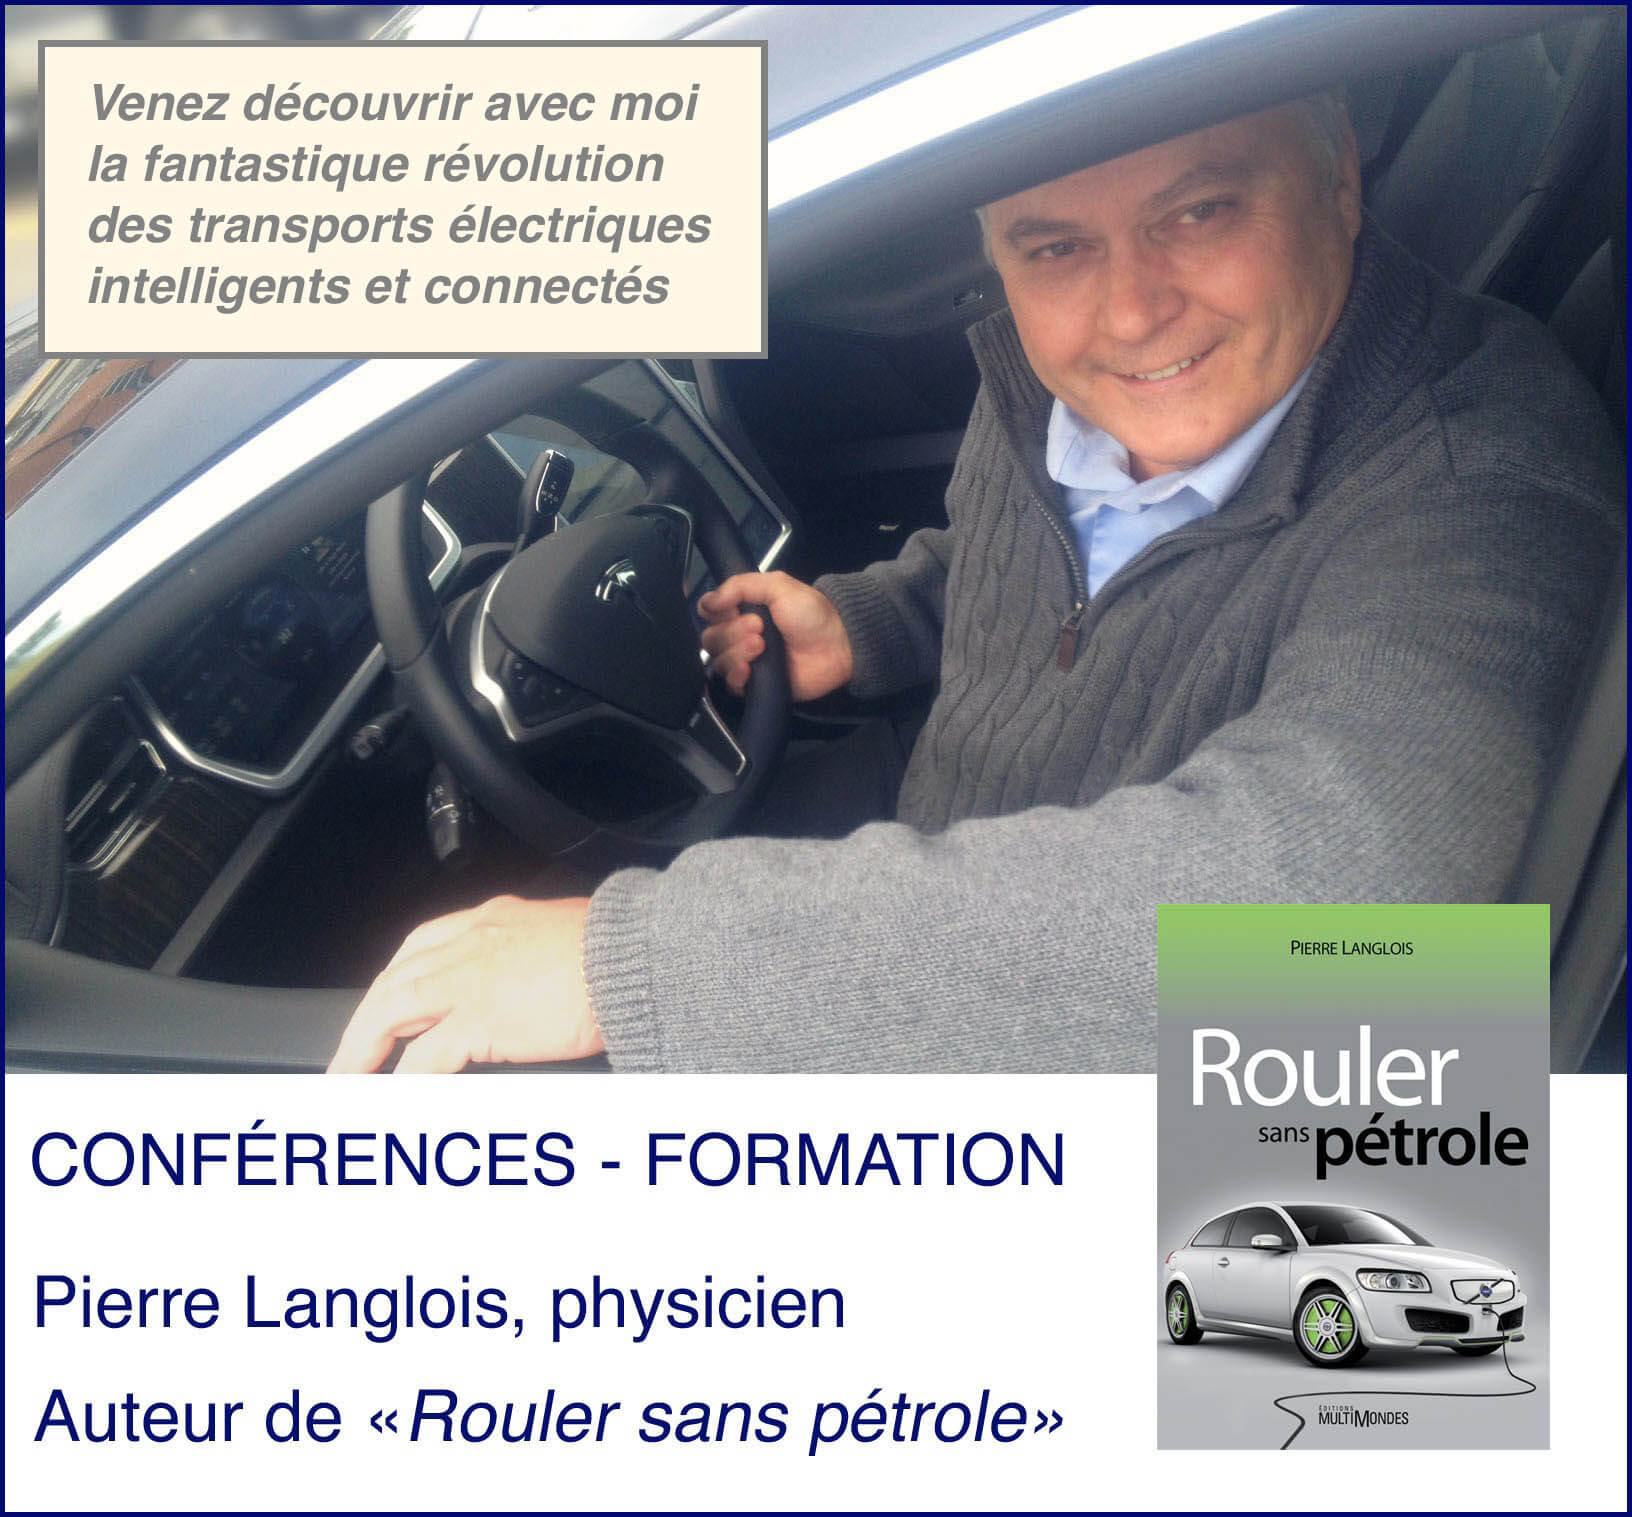 Physicien Pierre Langlois - électrification des transports - batteries voitures électriques